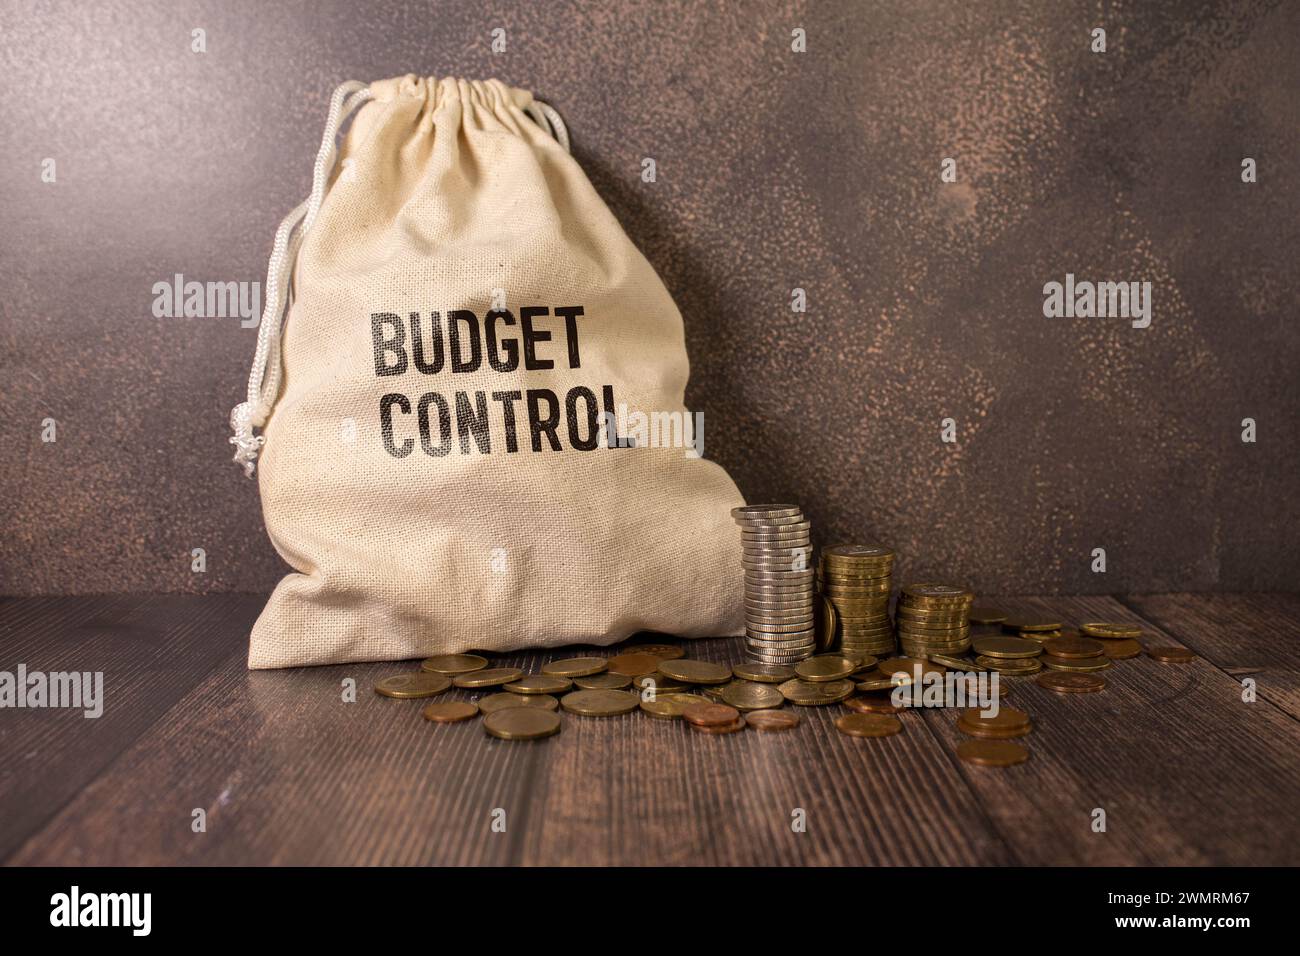 Budgetkontrolle. Brennendes Blatt Papier mit Text auf rostigem Metallhintergrund Stockfoto